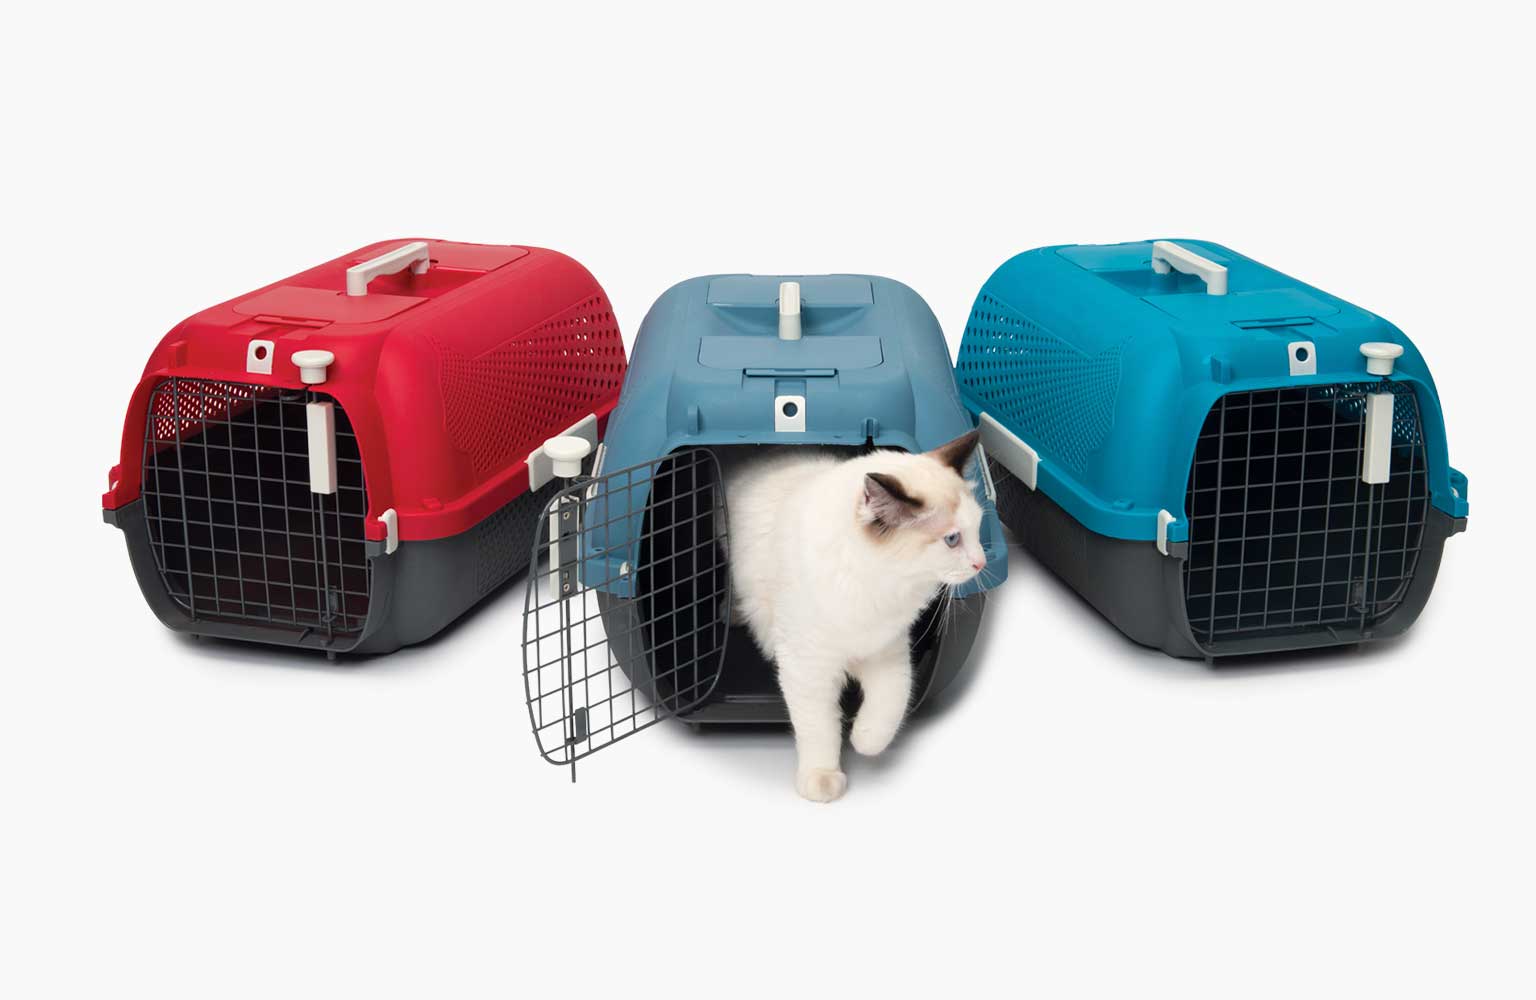 Cage de transport pour chats, rouge cerise - Catit